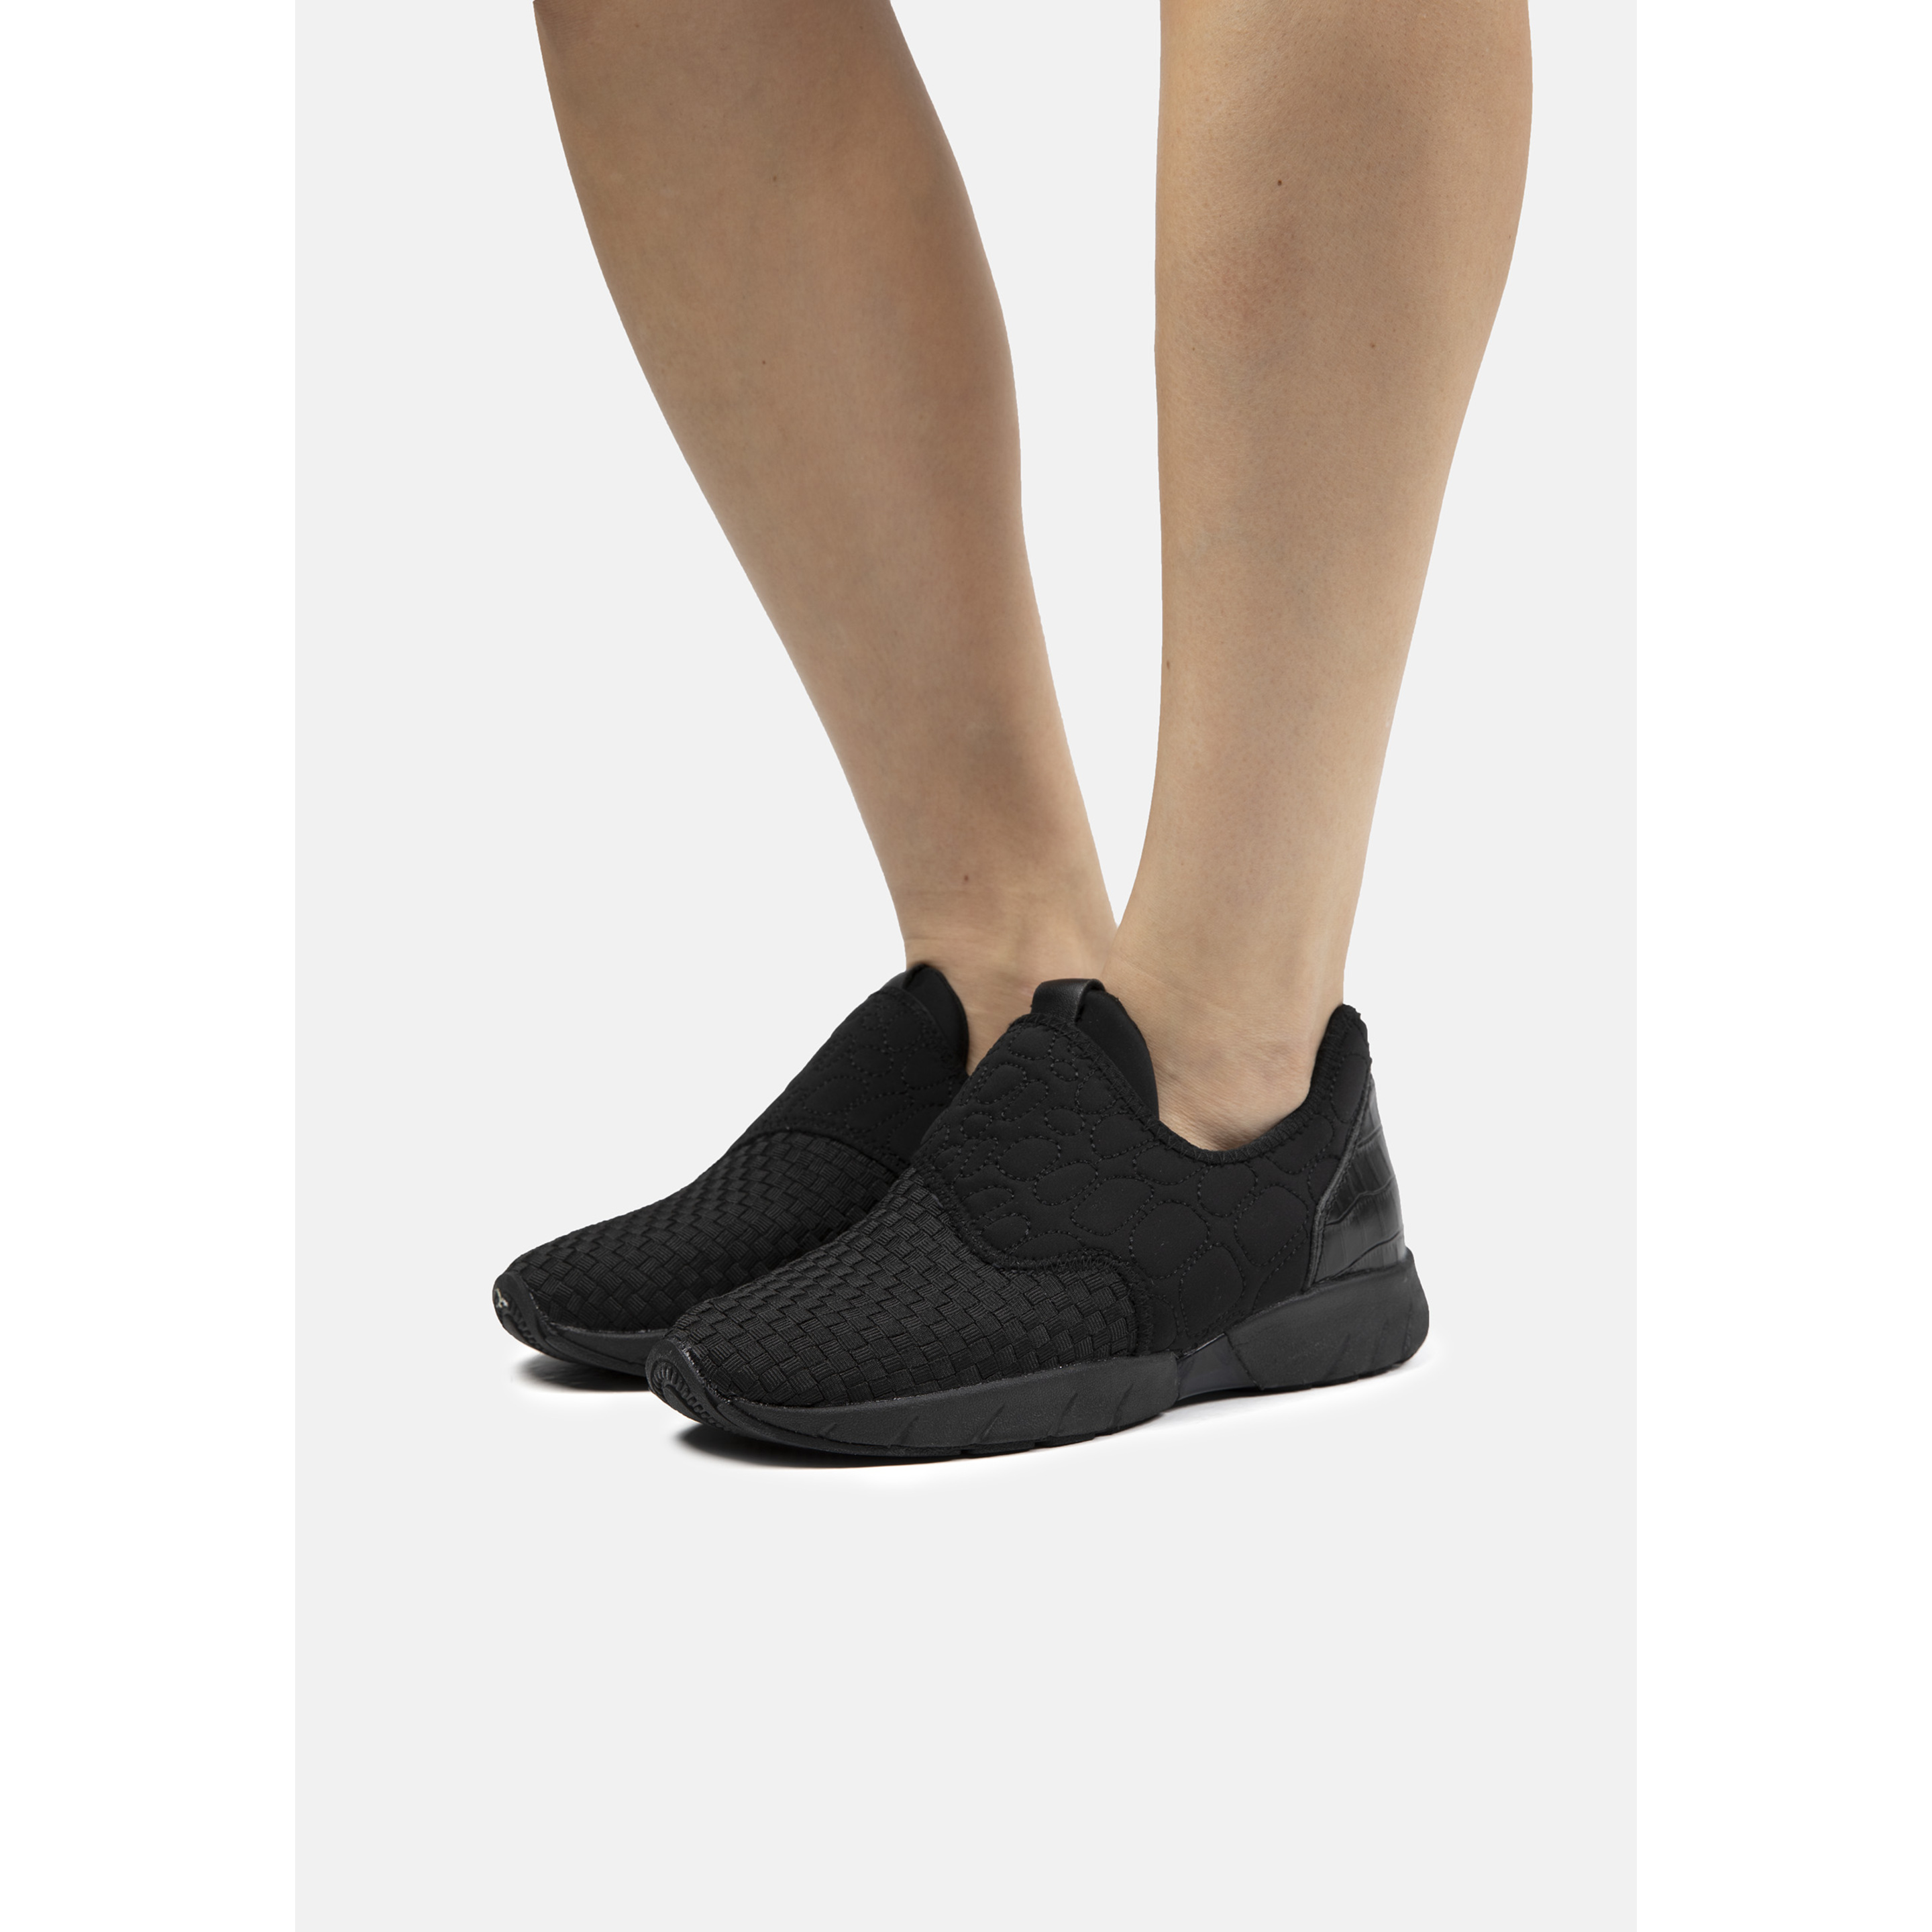 Zapatillas Deportivas De Mujer Bernie Mev De Textil En Negro (talla 35 A 42) | Sport Zone MKP